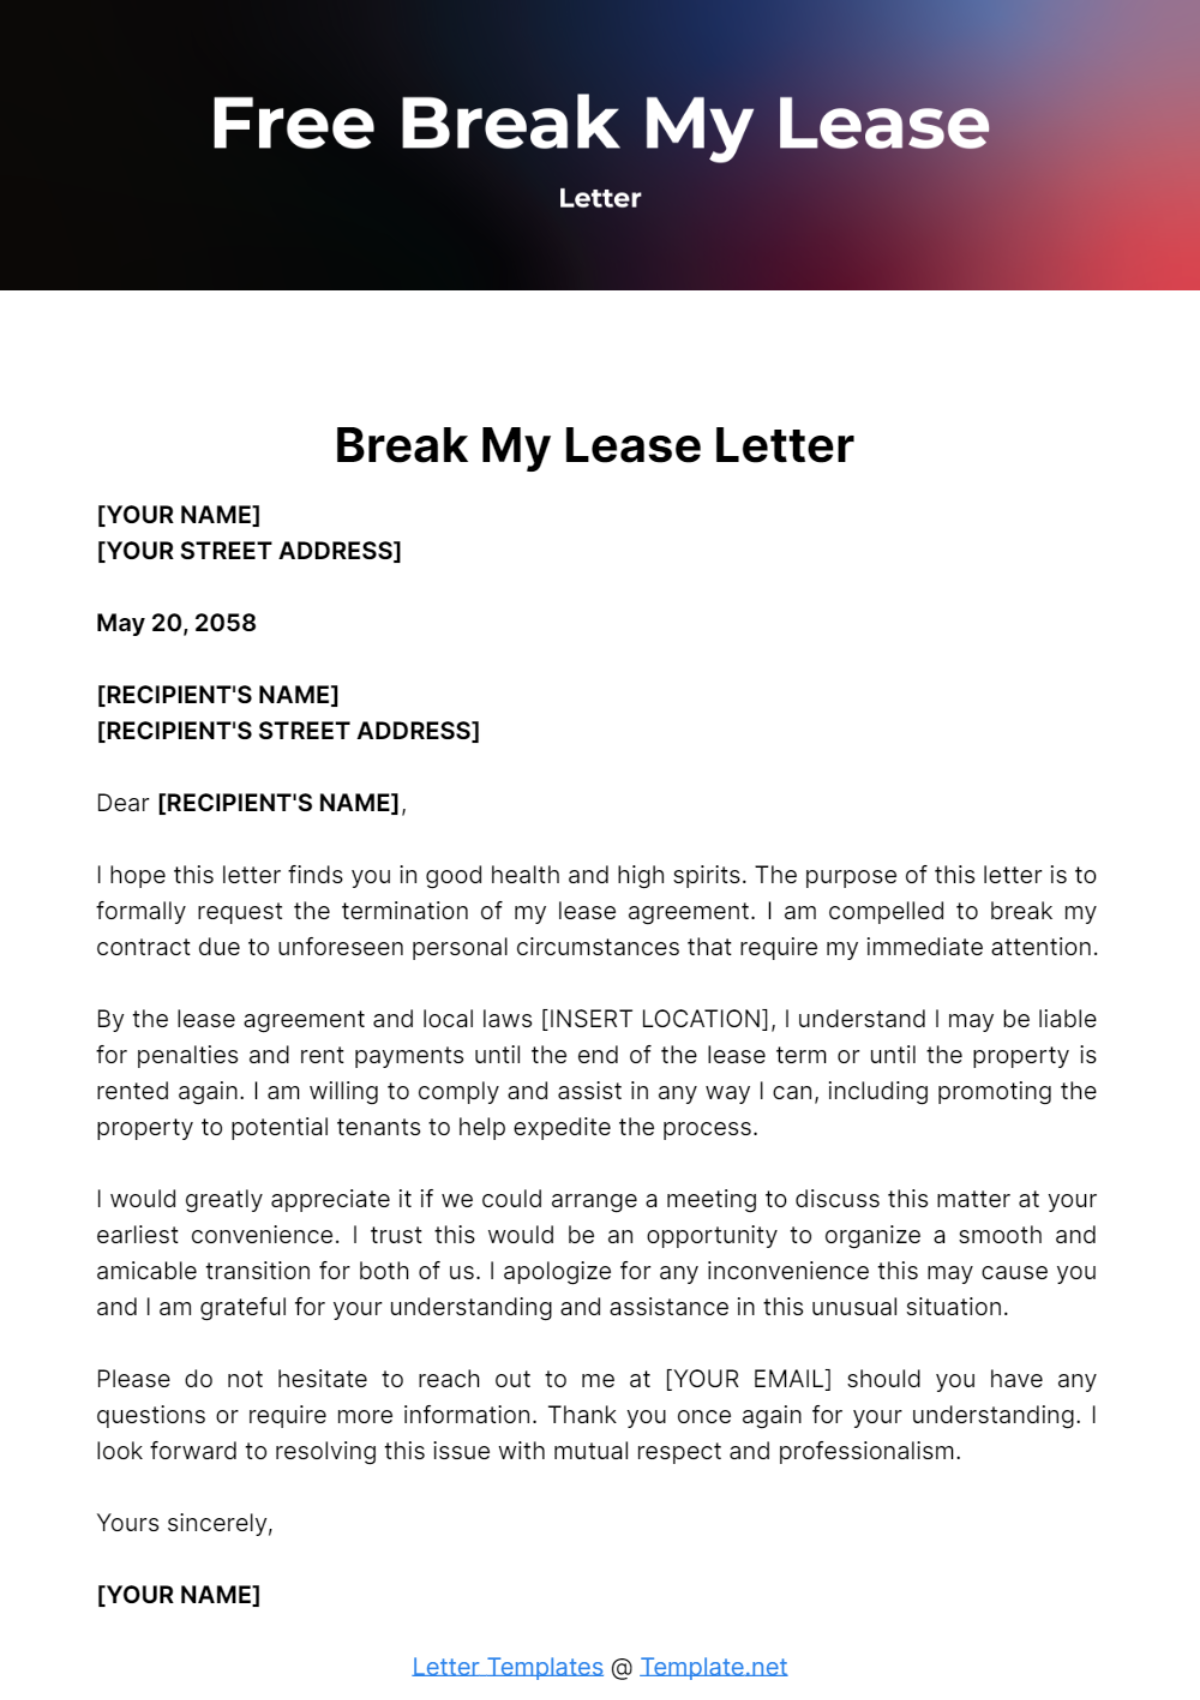 Free Break My Lease Letter Template